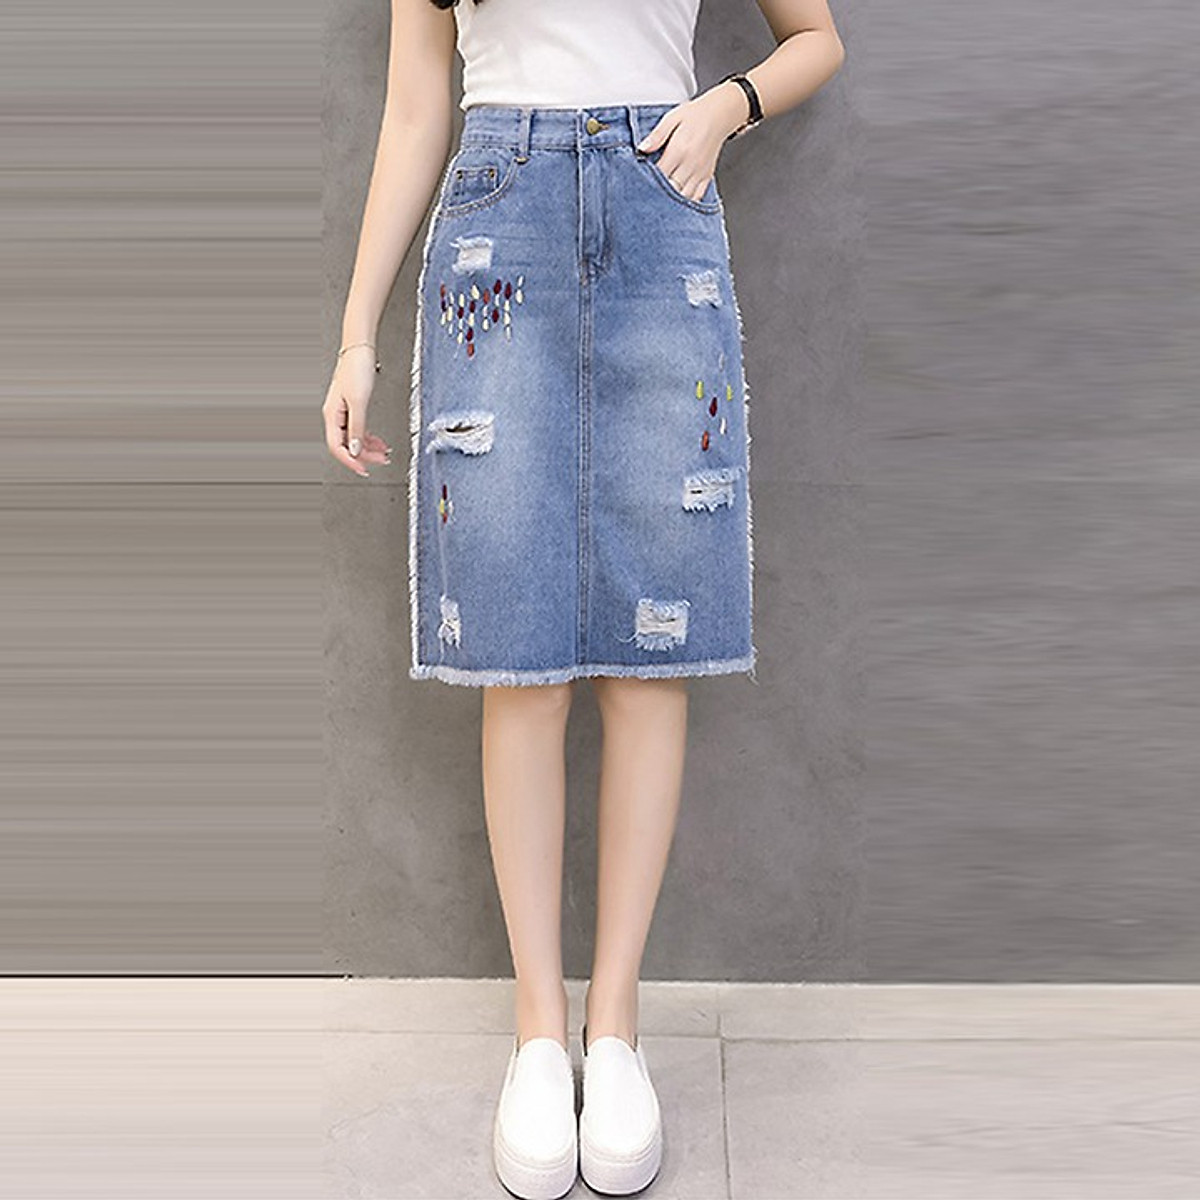 Chân váy jean dài qua gối màu xanh đá phom chữ A nhẹ lưng cao co dãn mạnh  3170 MLJ  Shopee Việt Nam